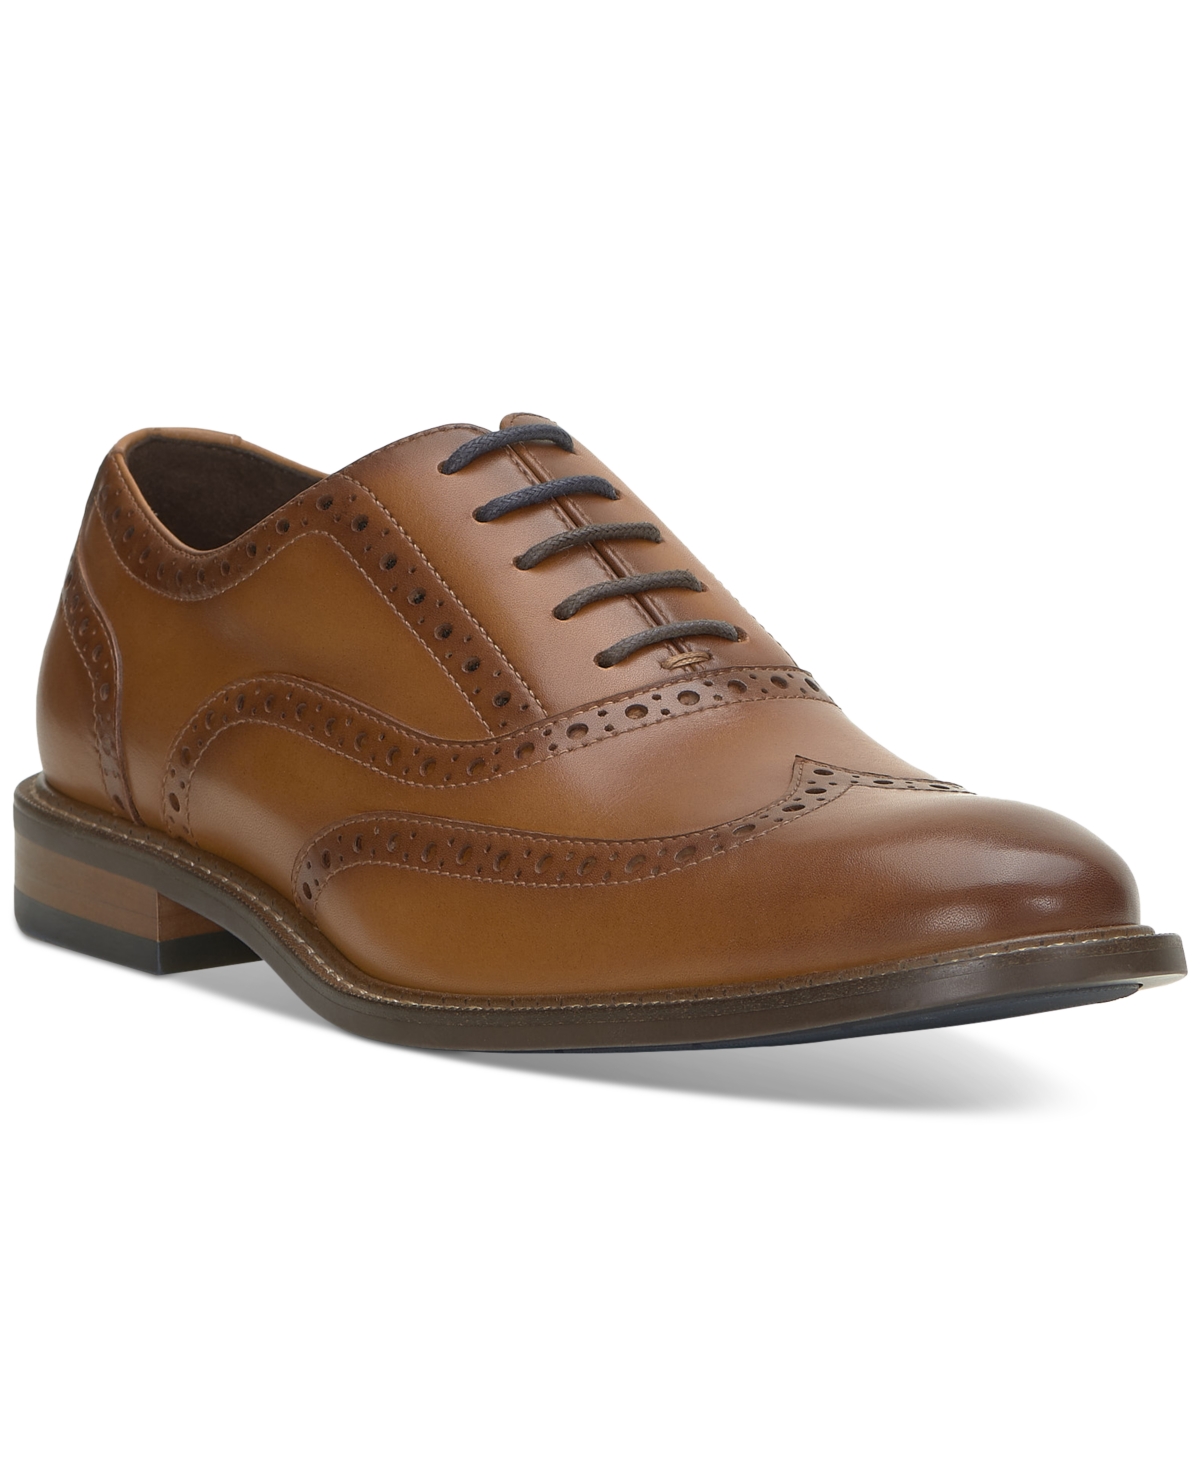 Men's Lazzarp Wingtip Oxford Dress Shoe - Cognac